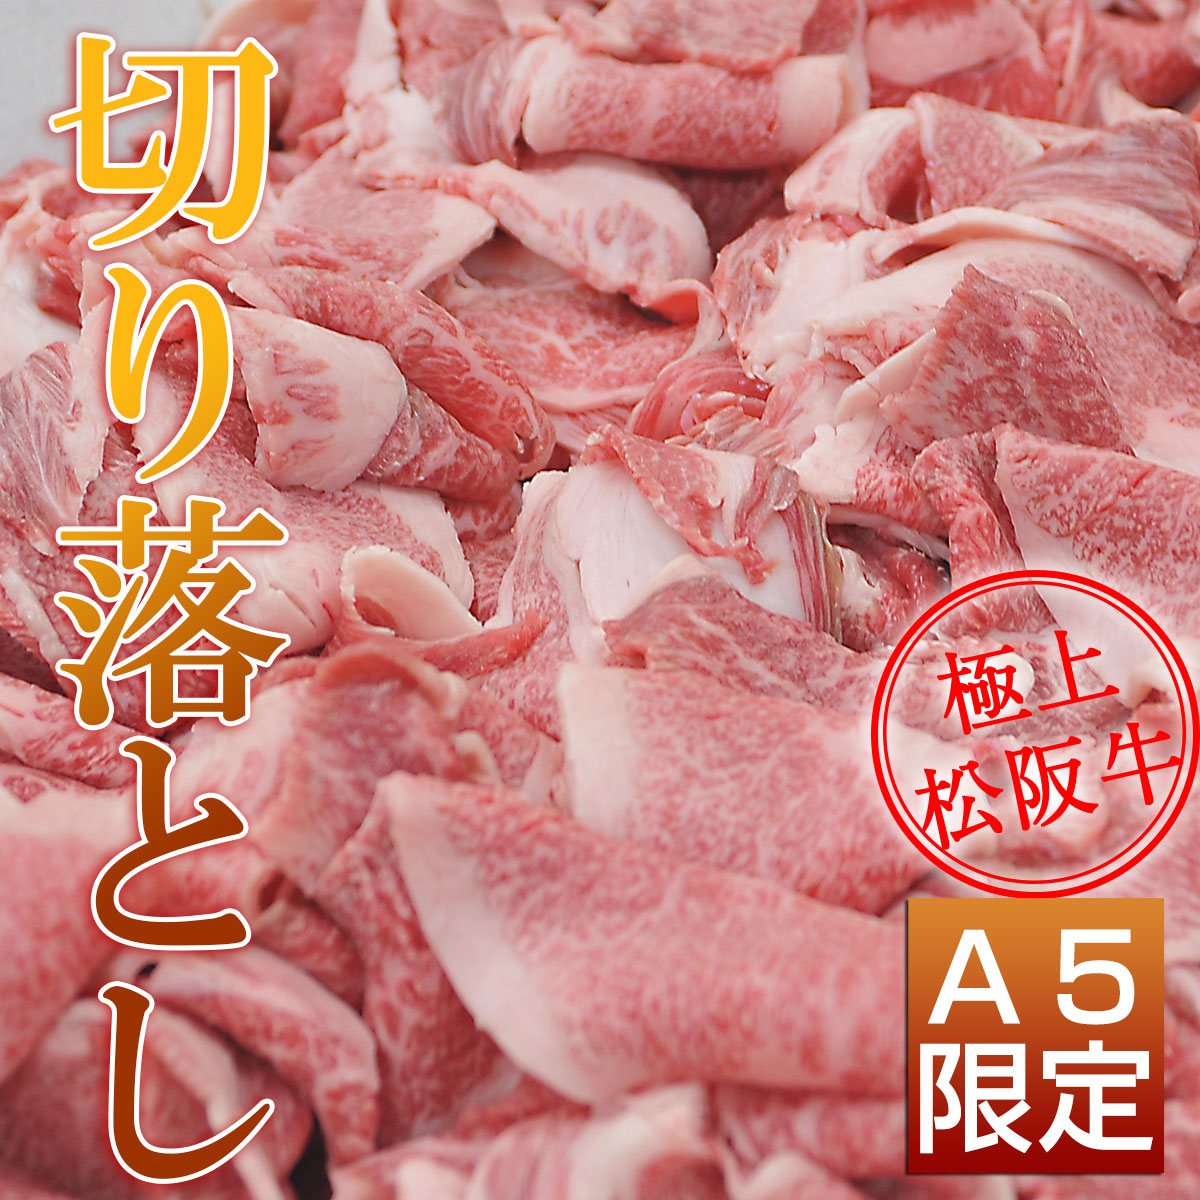 松阪牛上すき焼き3種食べ比べ